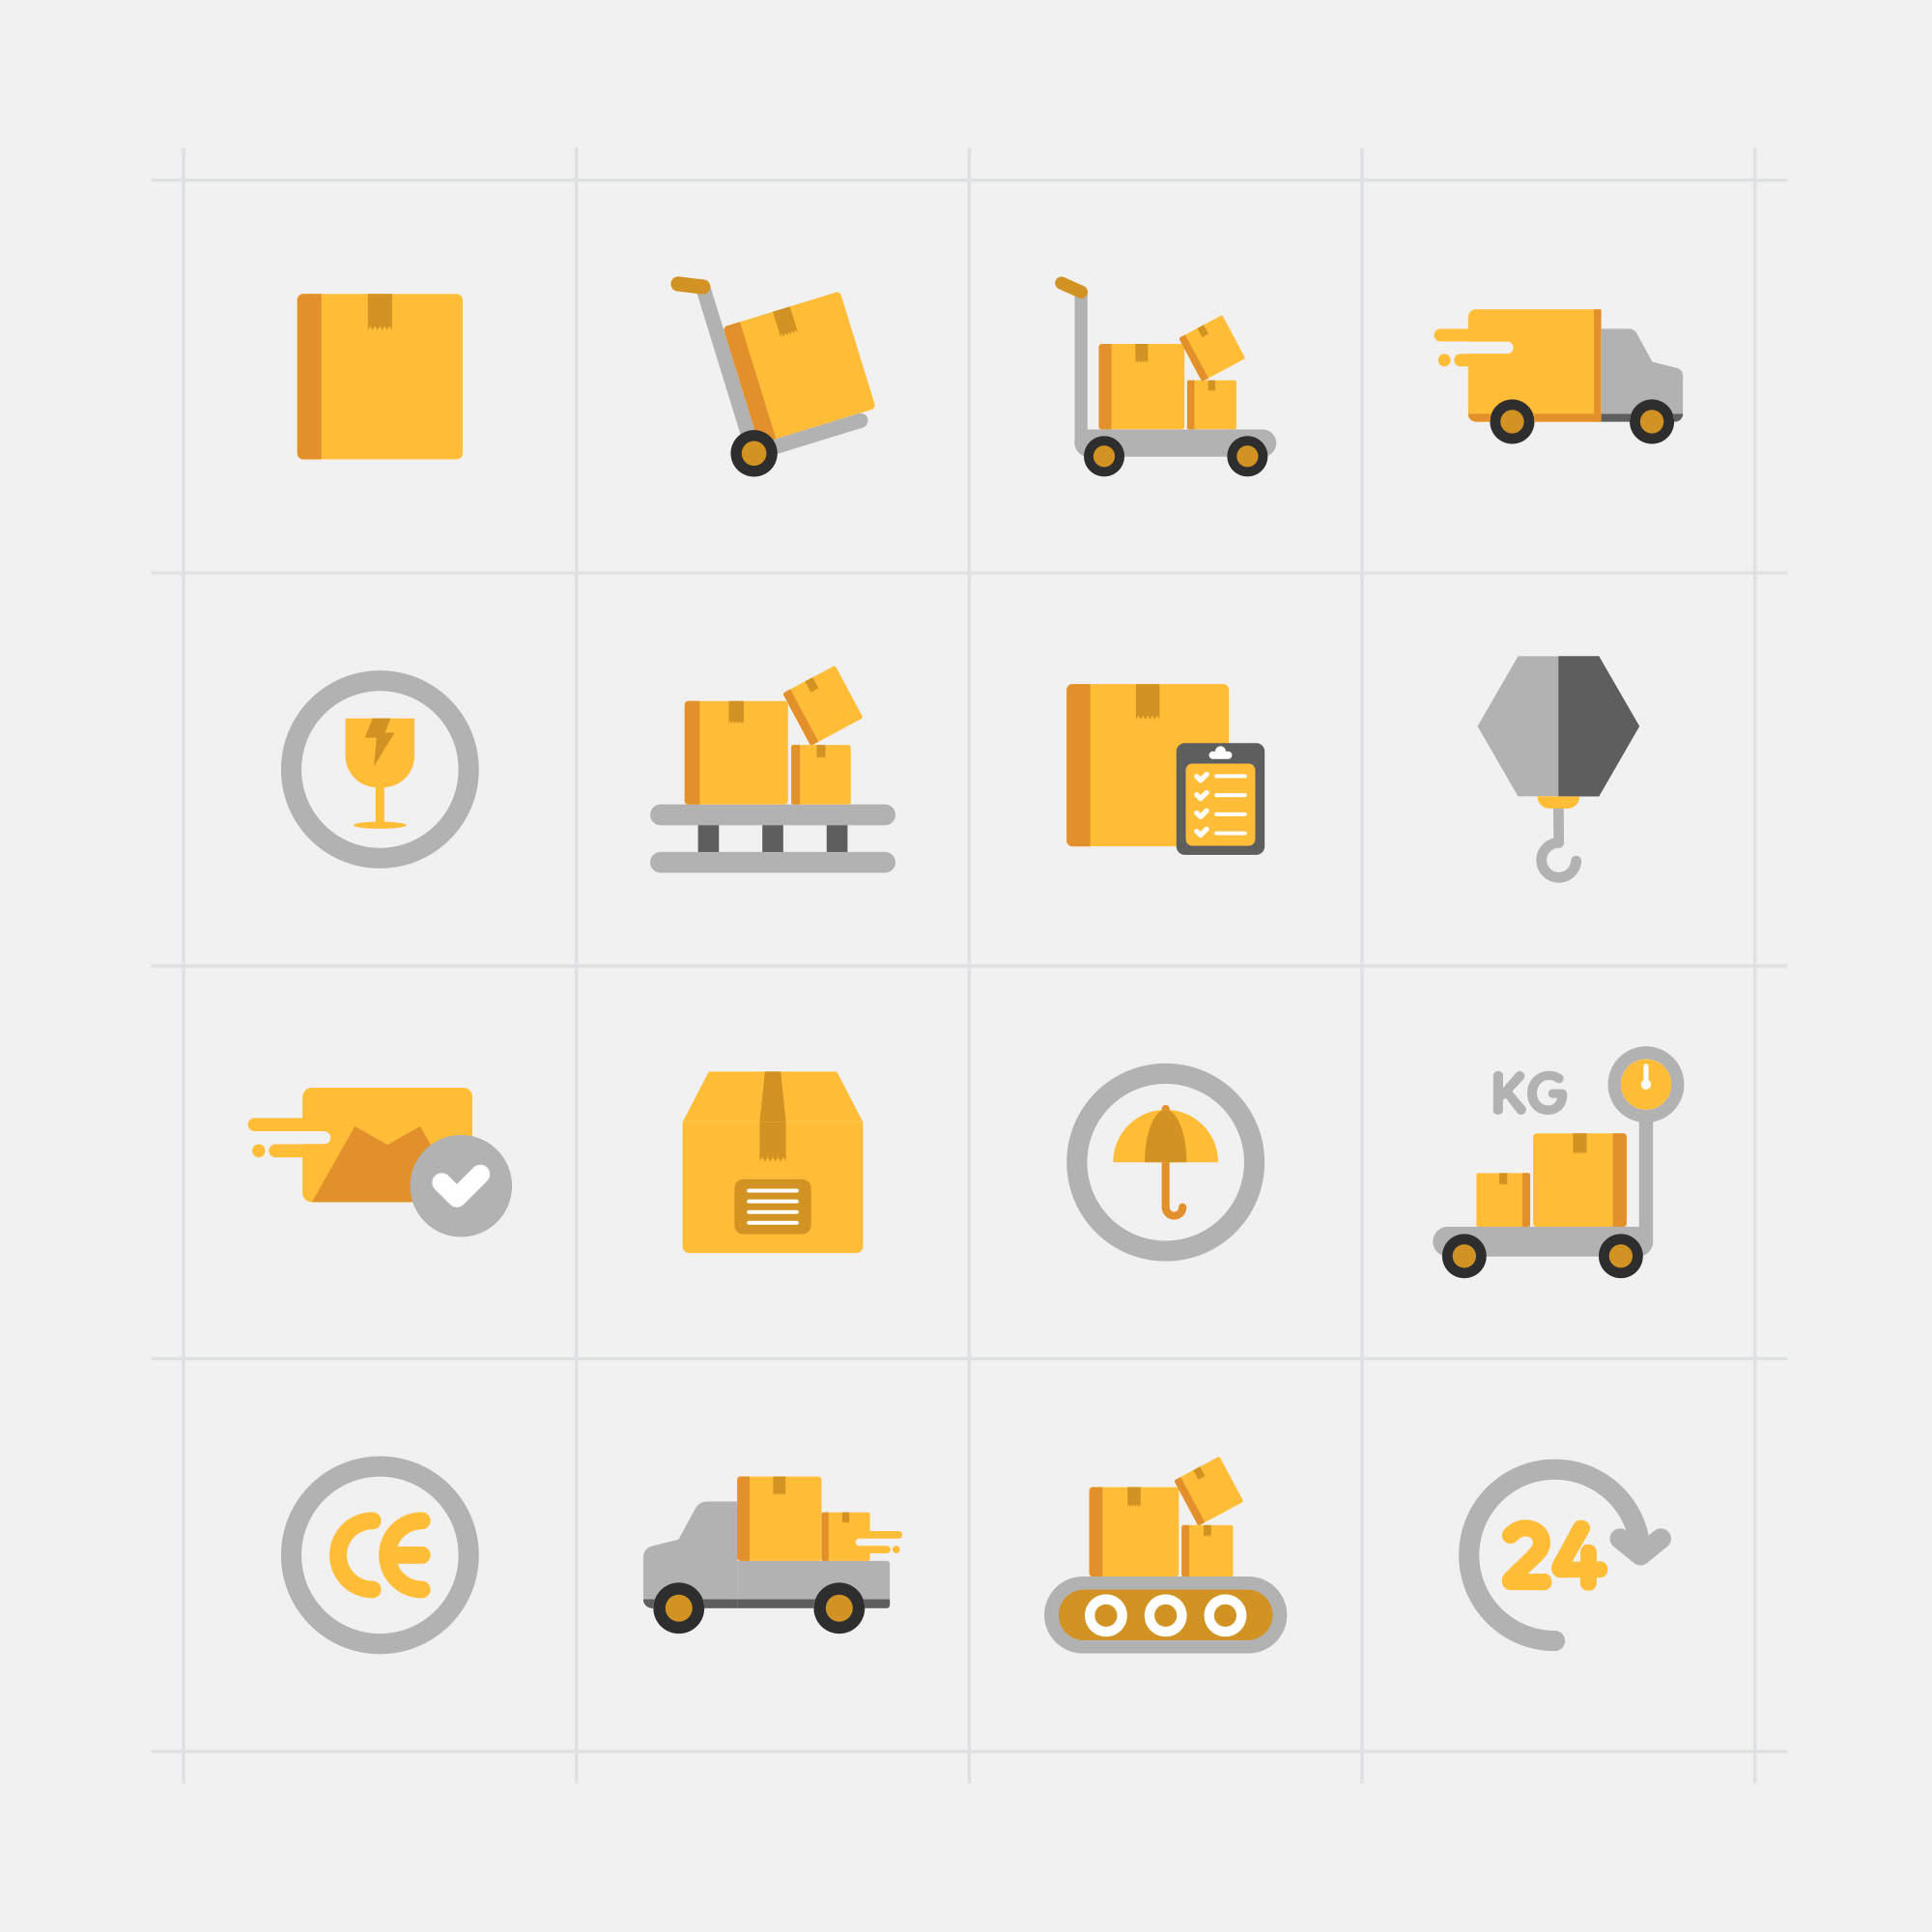 16枚快递配送主题矢量彩色大洋岛精选图标 16 Delivery Vector Icons插图